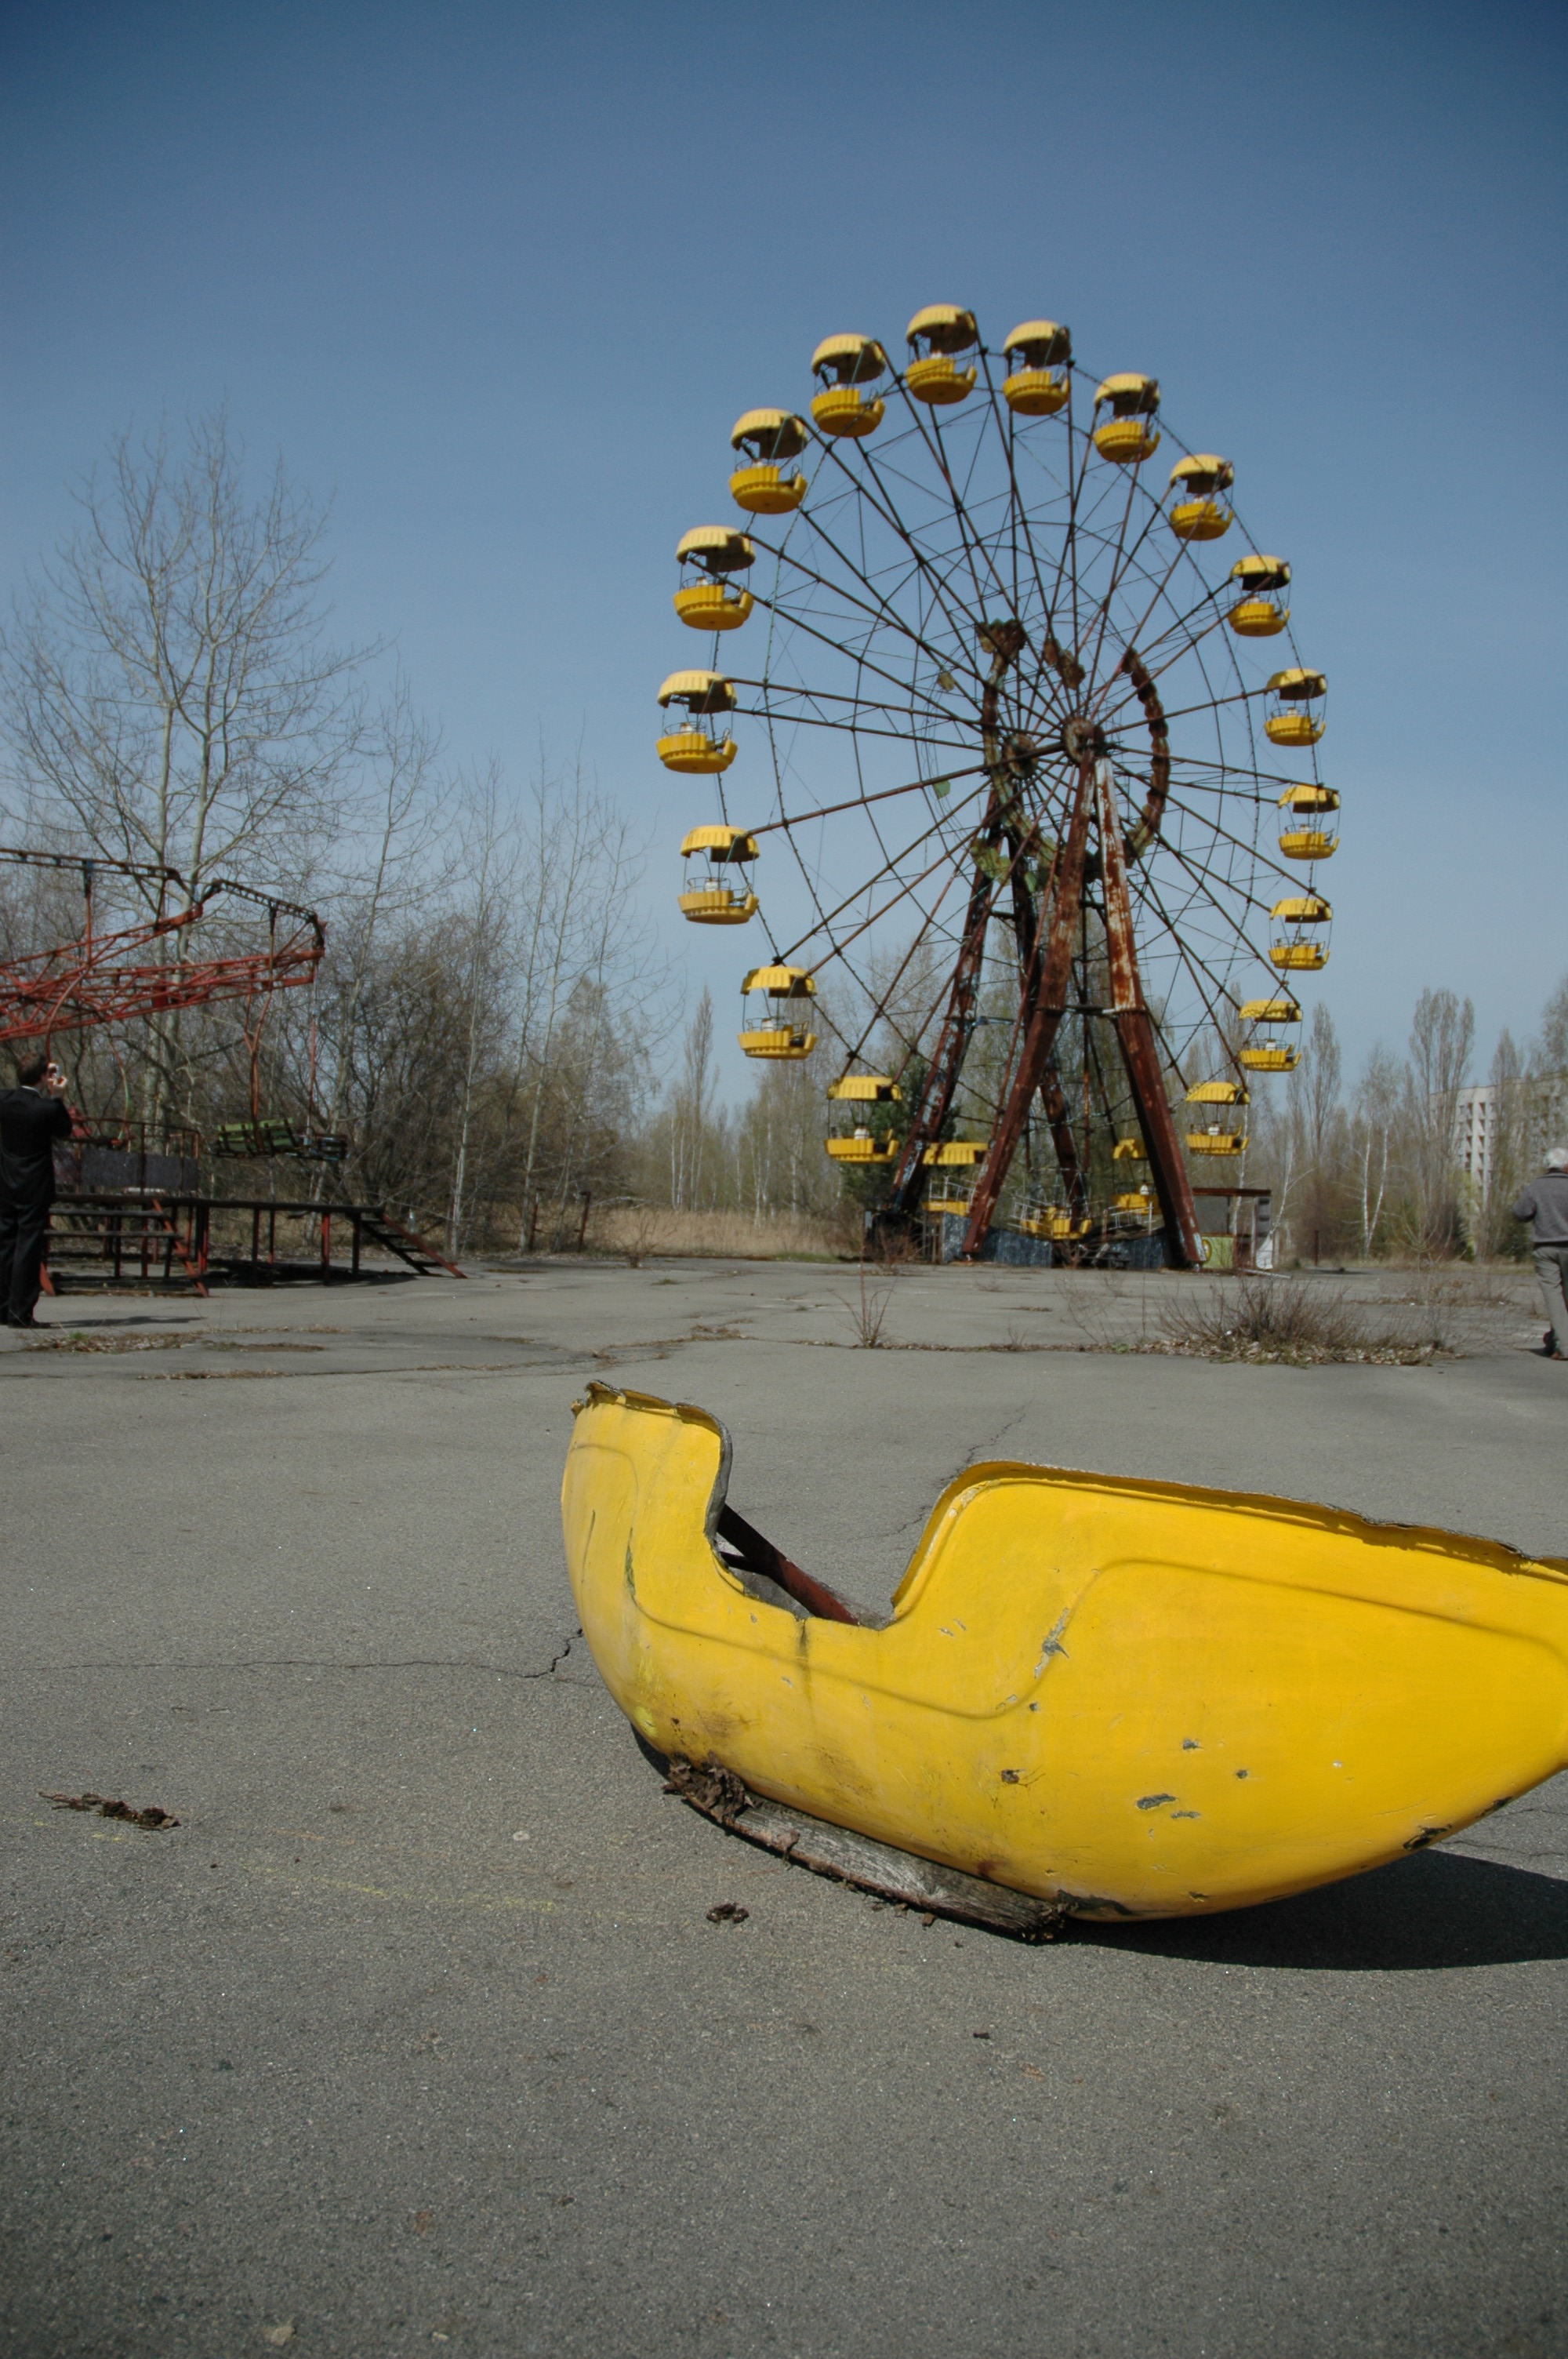 Припять, Чернобыль, чертово колесо - обои на рабочий стол